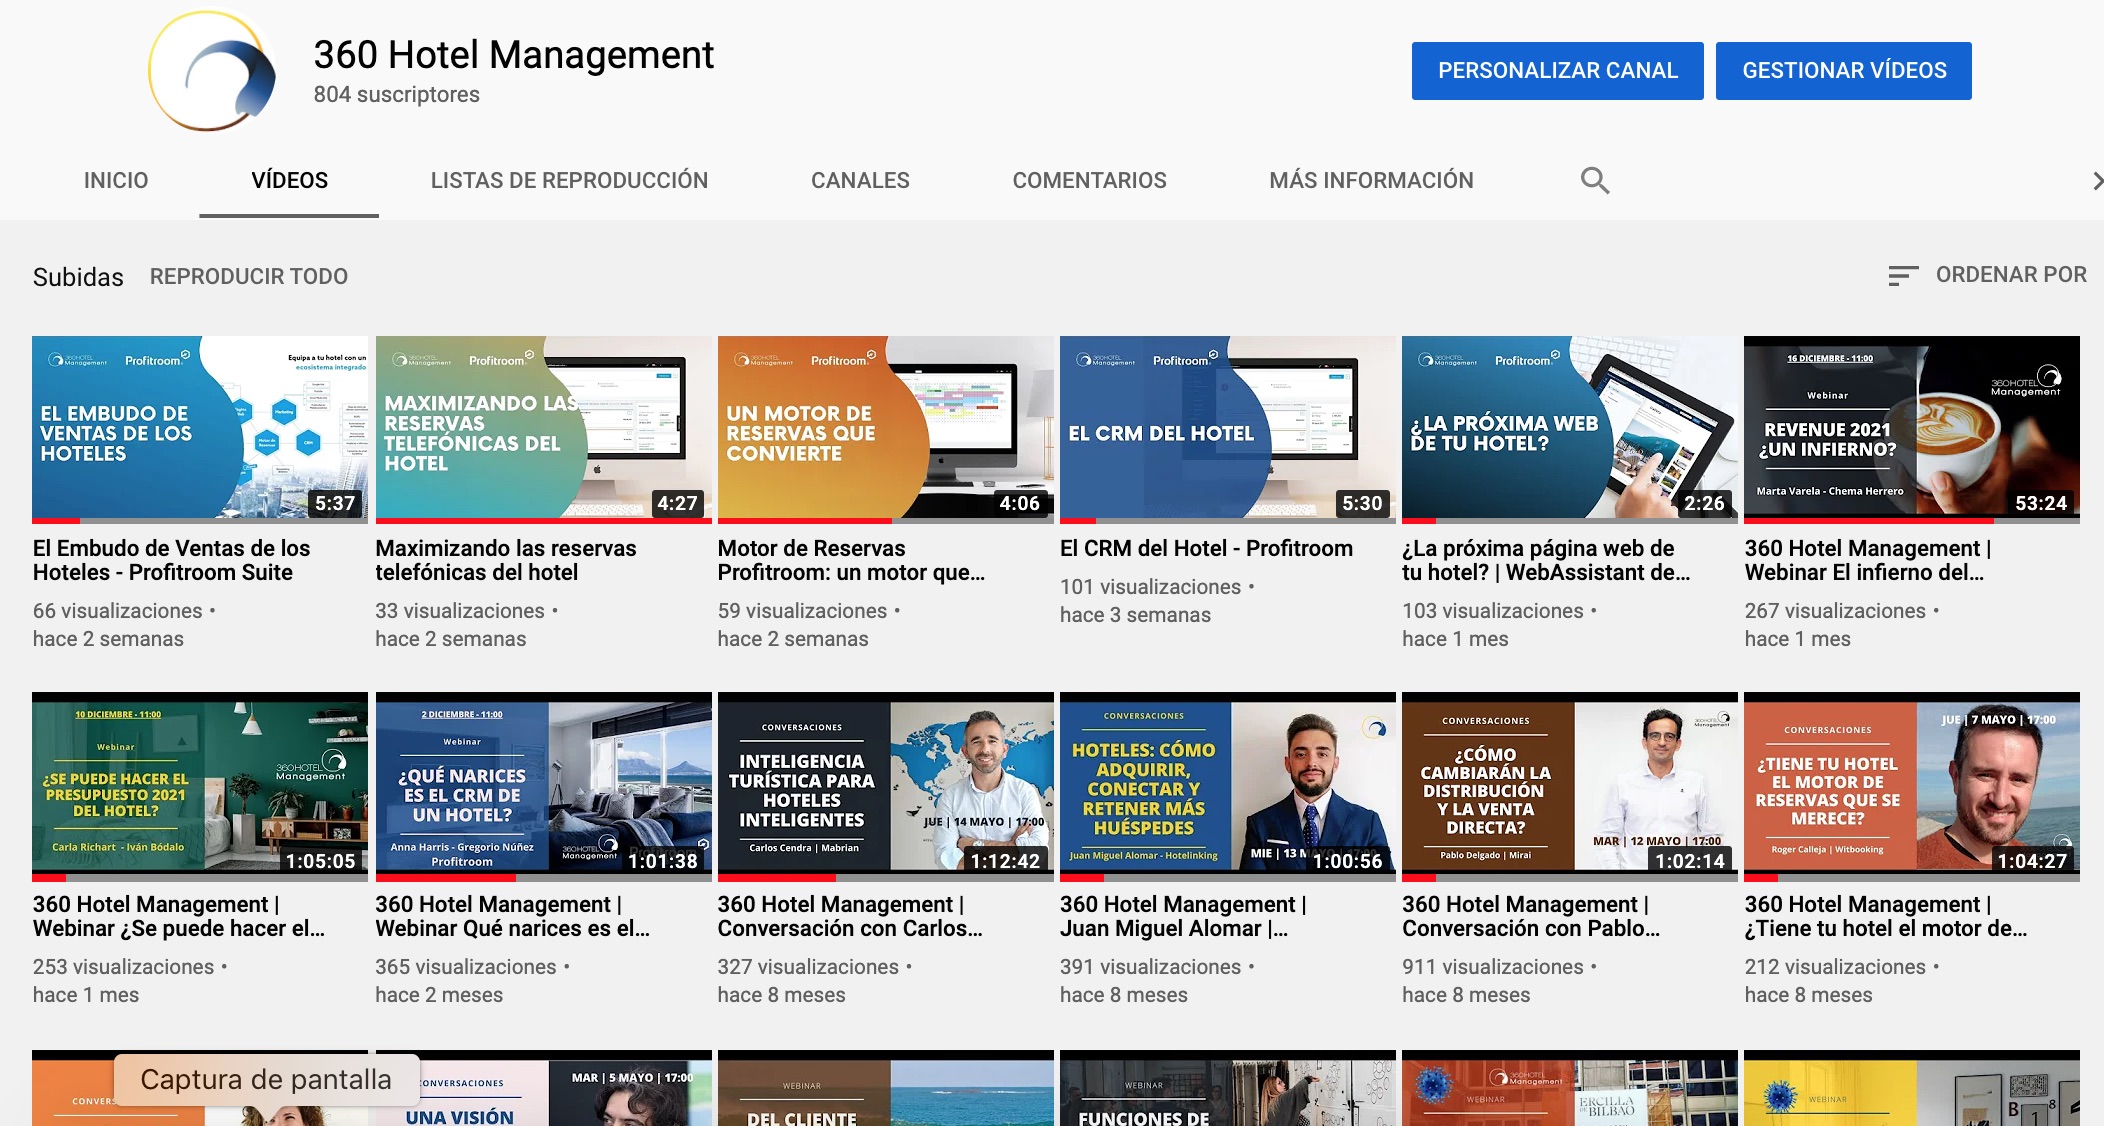 Mosaico de videos de Webinars de 360 Hotel Management